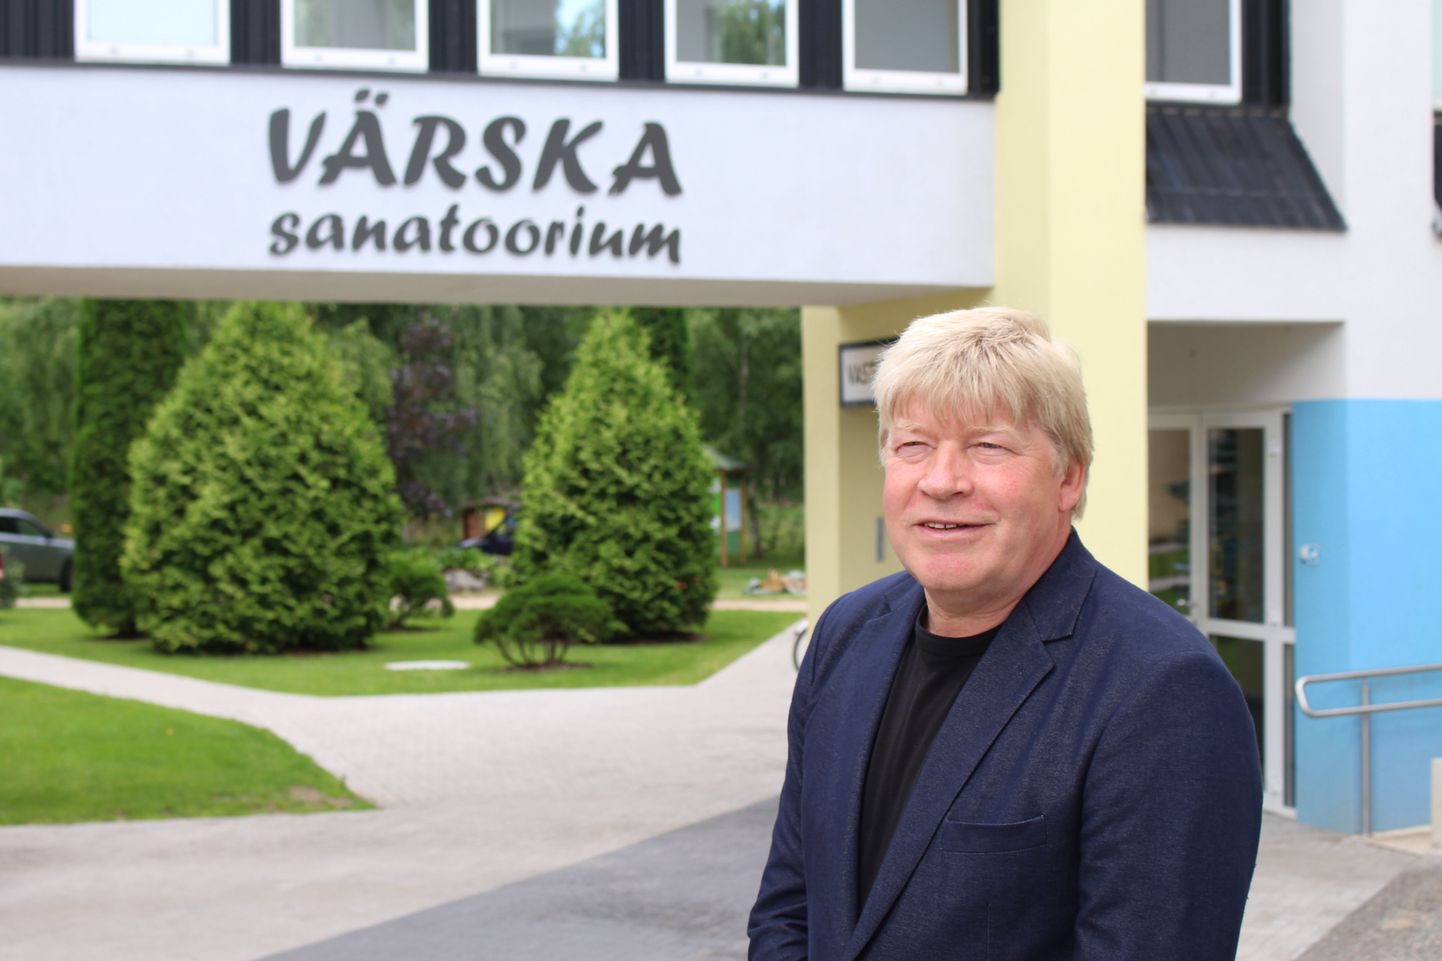 Vello Saar otsib uusi võimalusi, kuidas veelgi rohkem kasutada Värska väärtuslikku mineraalvett. Tartu teadlased tegelevad praegu uuringutega, kuidas toota Värska mineraalvee baasil ninaspreid – selline ninarohi oleks nii Eestis kui ka maailmas unikaalne.